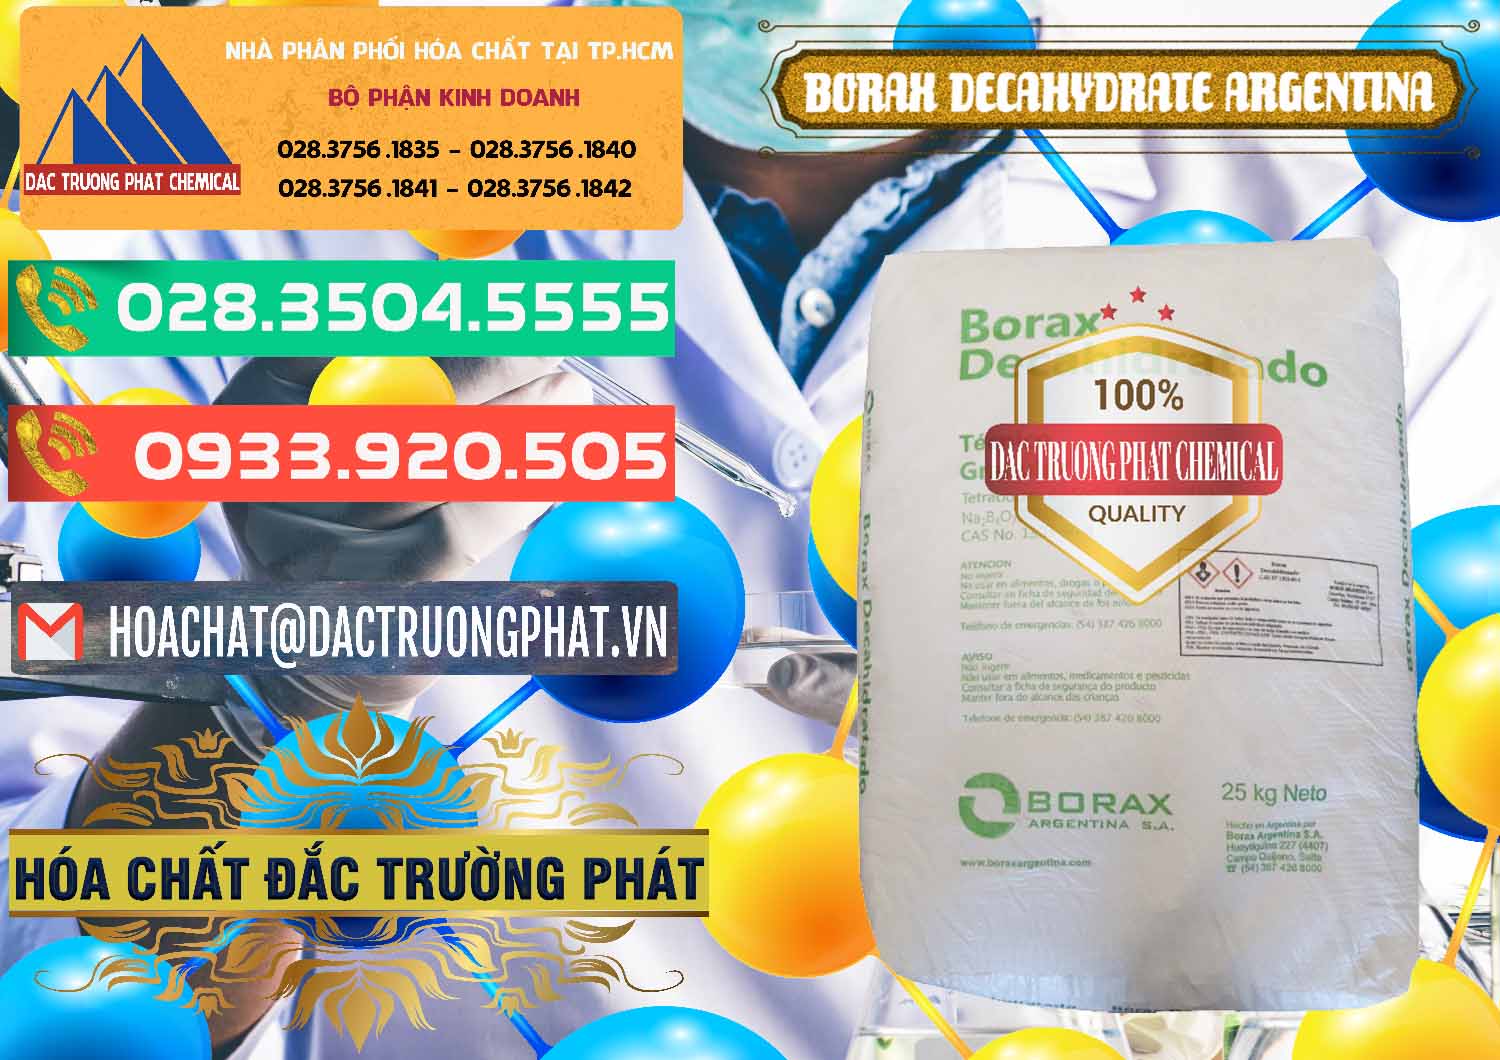 Chuyên bán - cung ứng Borax Decahydrate Argentina - 0446 - Nhà cung cấp _ phân phối hóa chất tại TP.HCM - congtyhoachat.com.vn